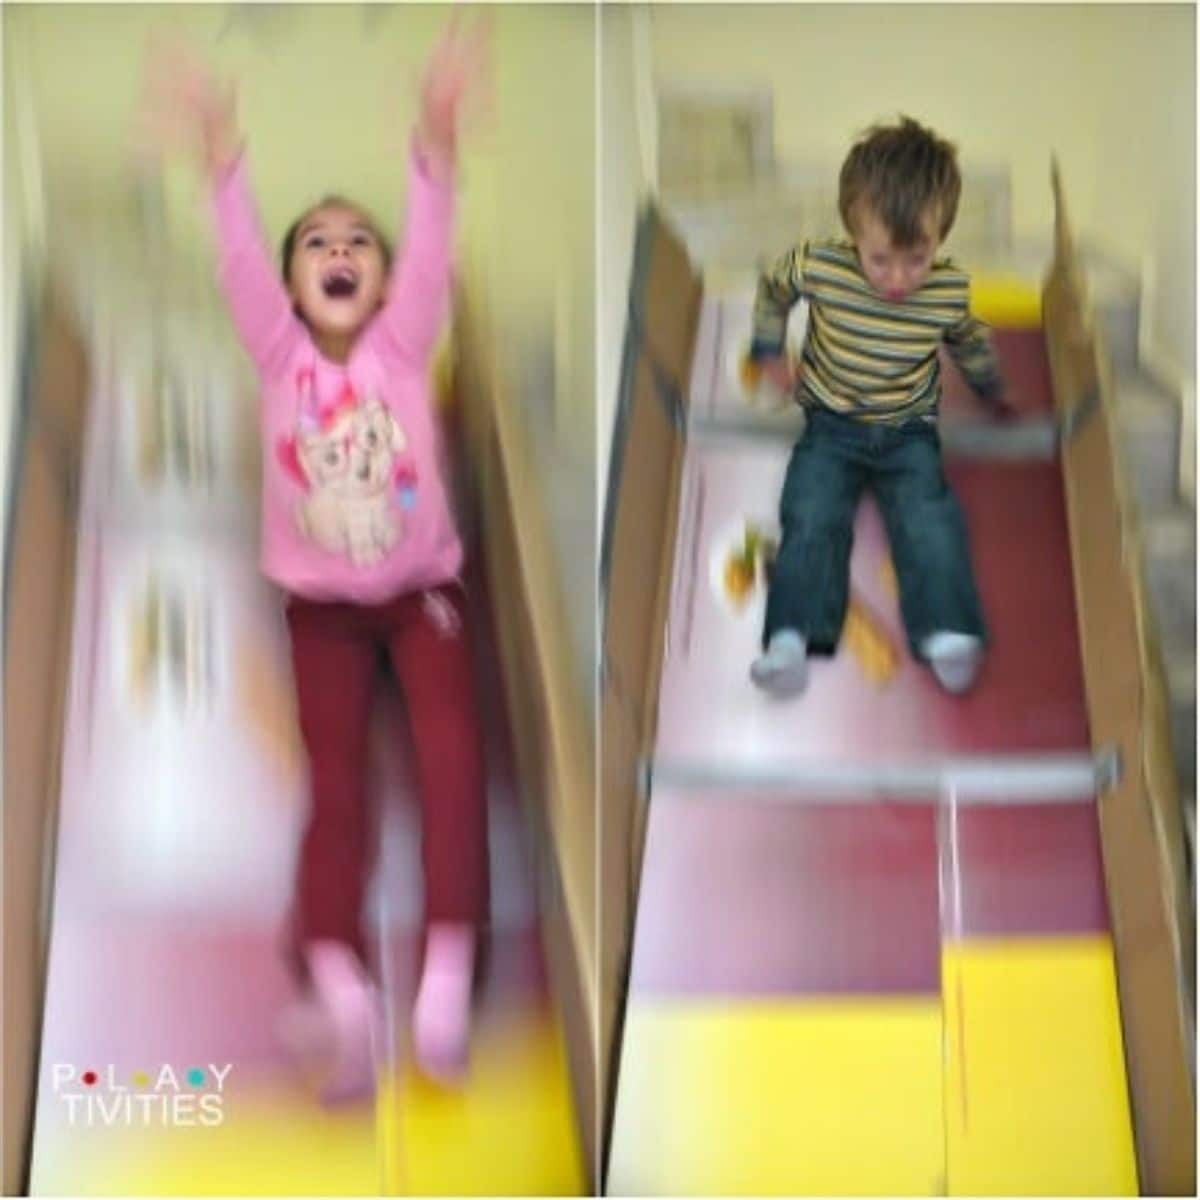 Kids sliding on a cardboard slide.